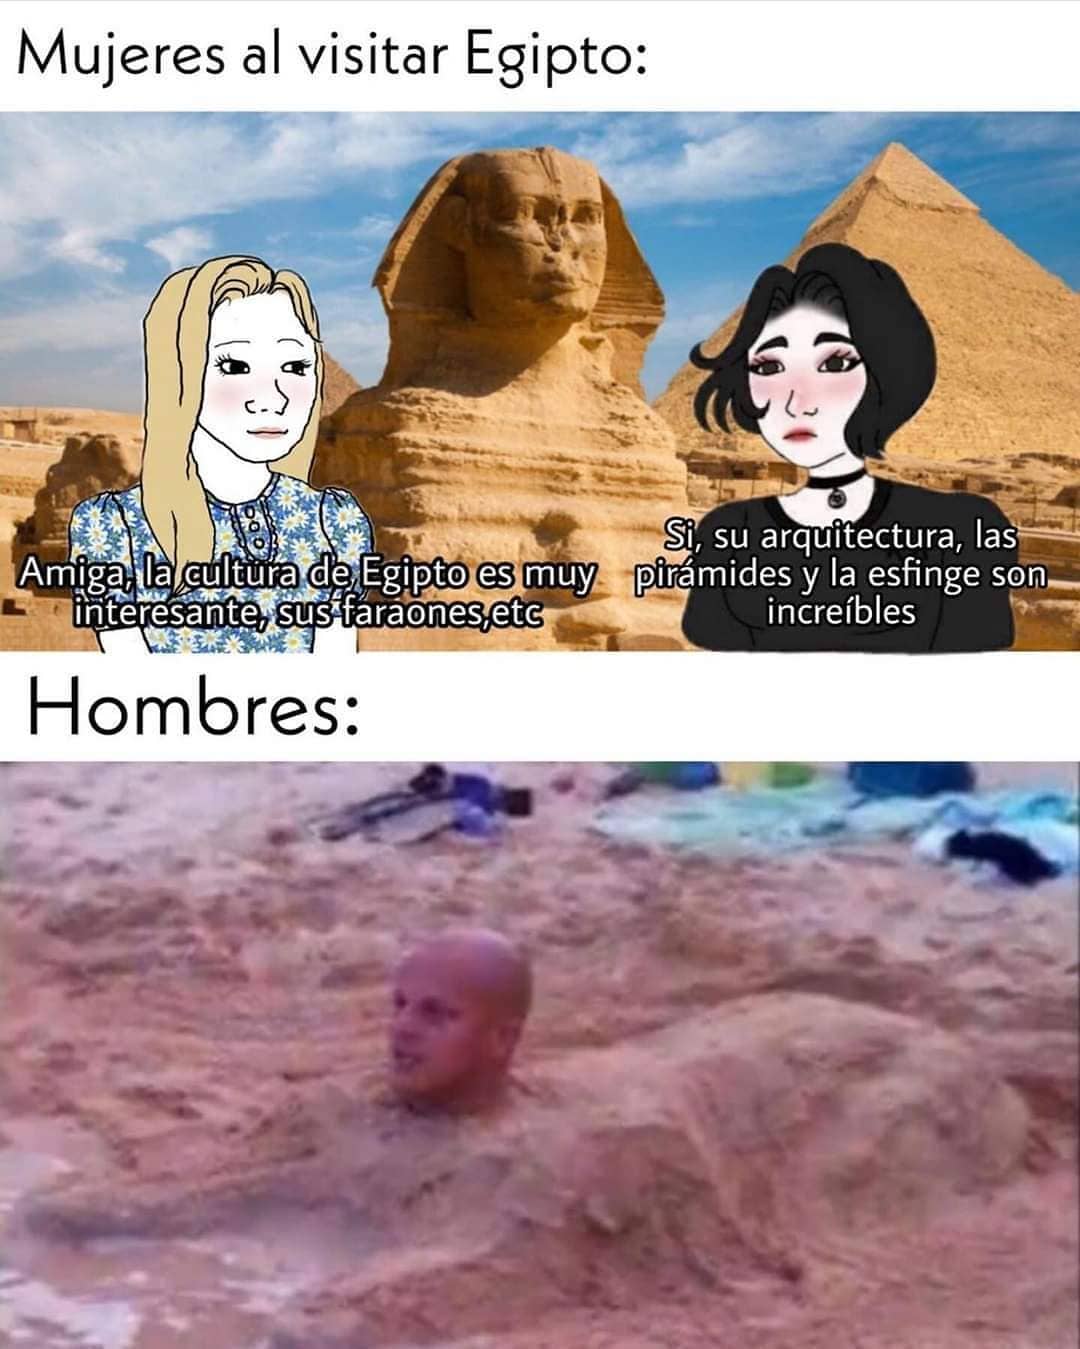 Mujeres al visitar Egipto:  Amiga la cultura de Egipto es muy interesante, sus faraones, etc...  Sí, su arquitectura, las pirámides y la esfinge son increíbles.  Hombres: